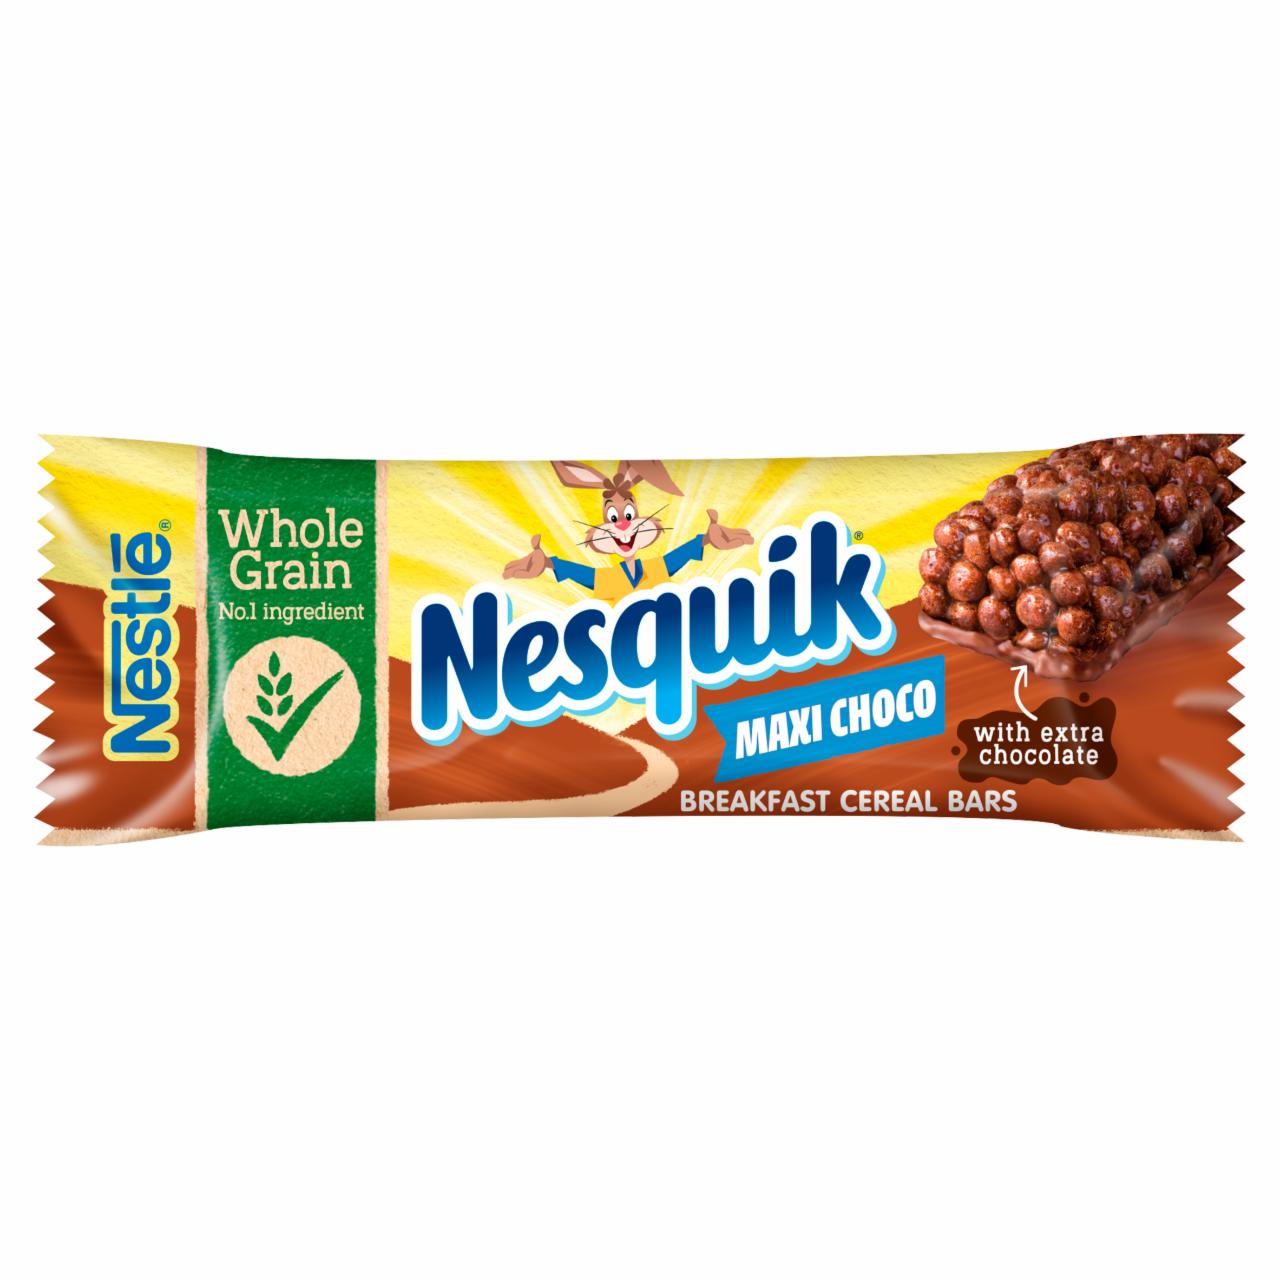 Zdjęcia - Nesquik Maxi Choco Batonik zbożowy 25 g Nestlé